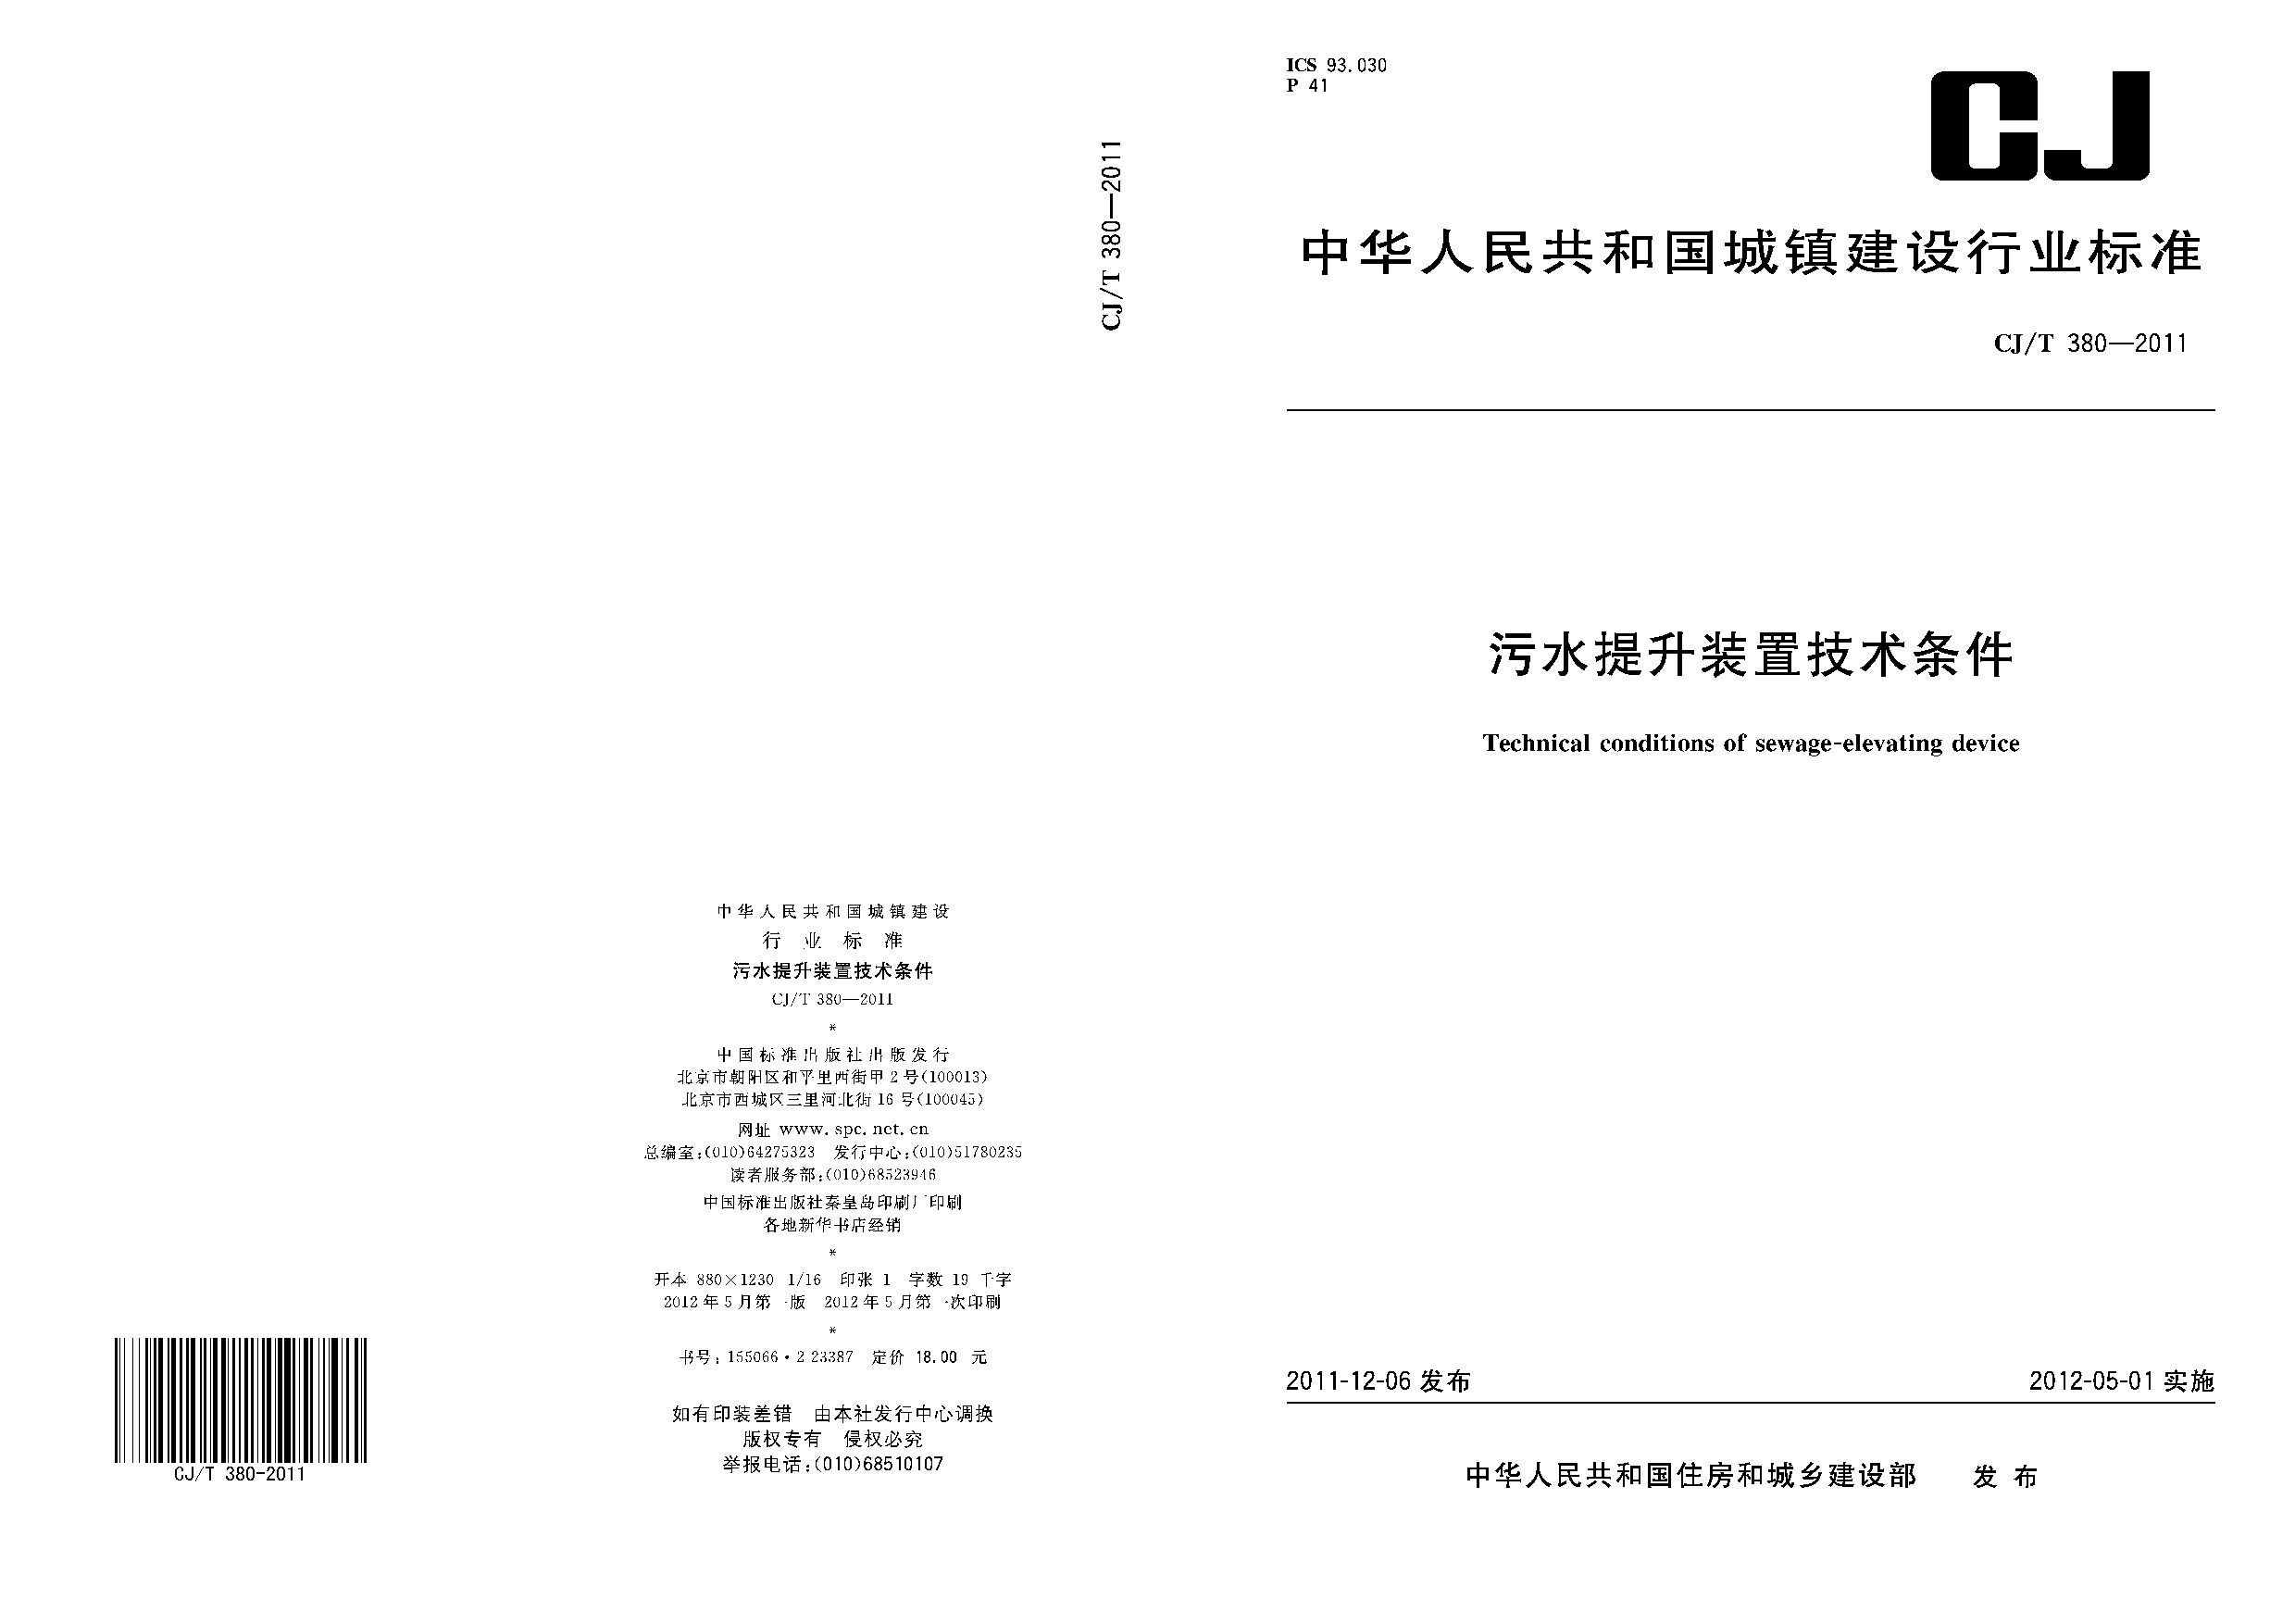 CJ/T 380-2011封面图